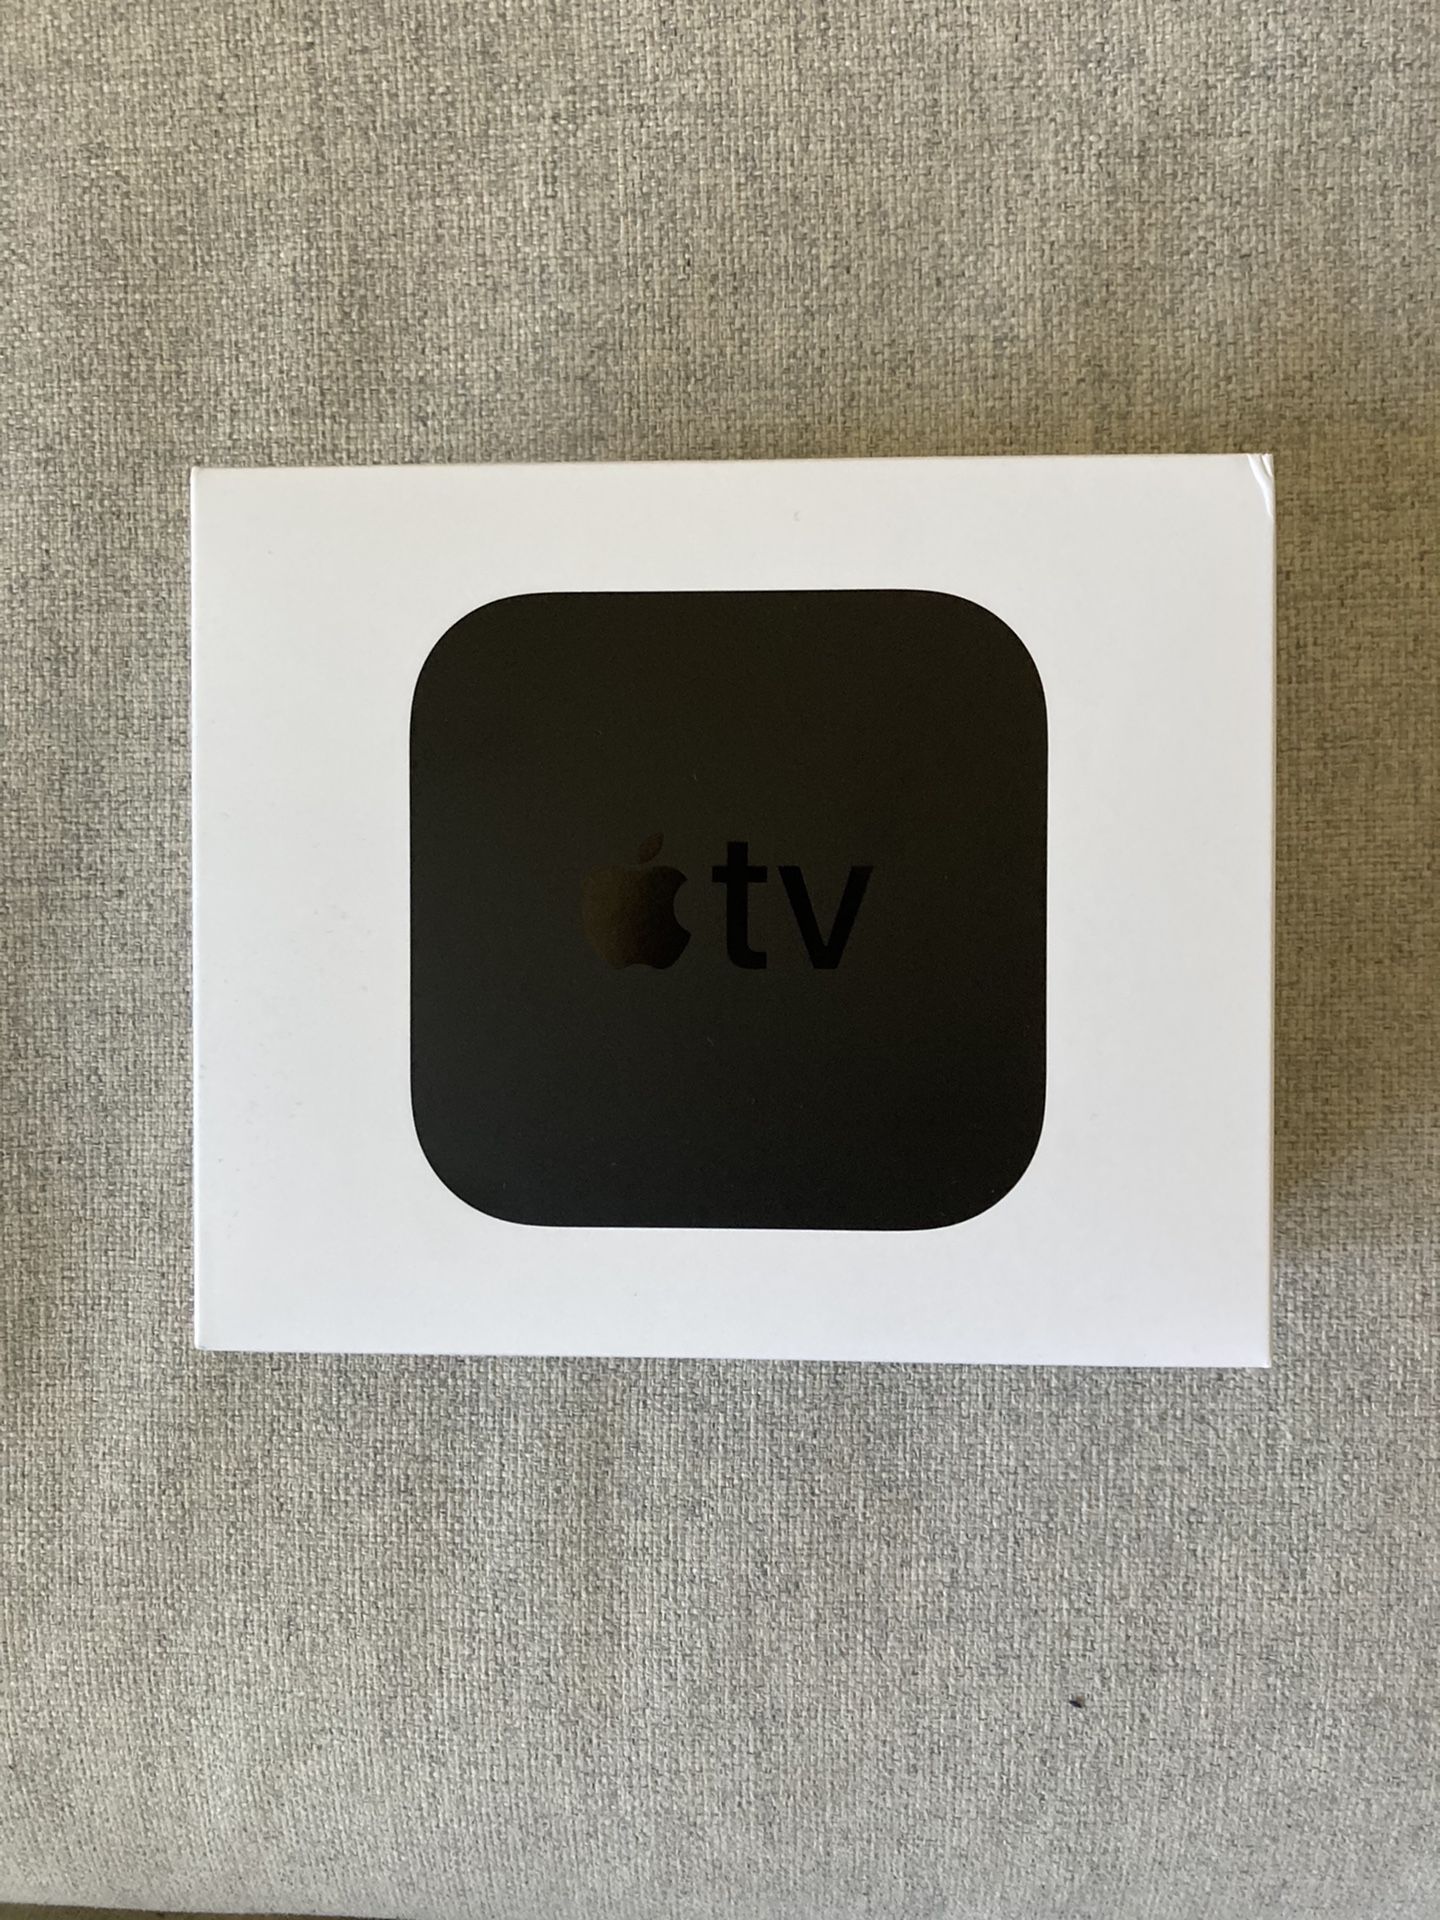 Brand new Apple TV 4K